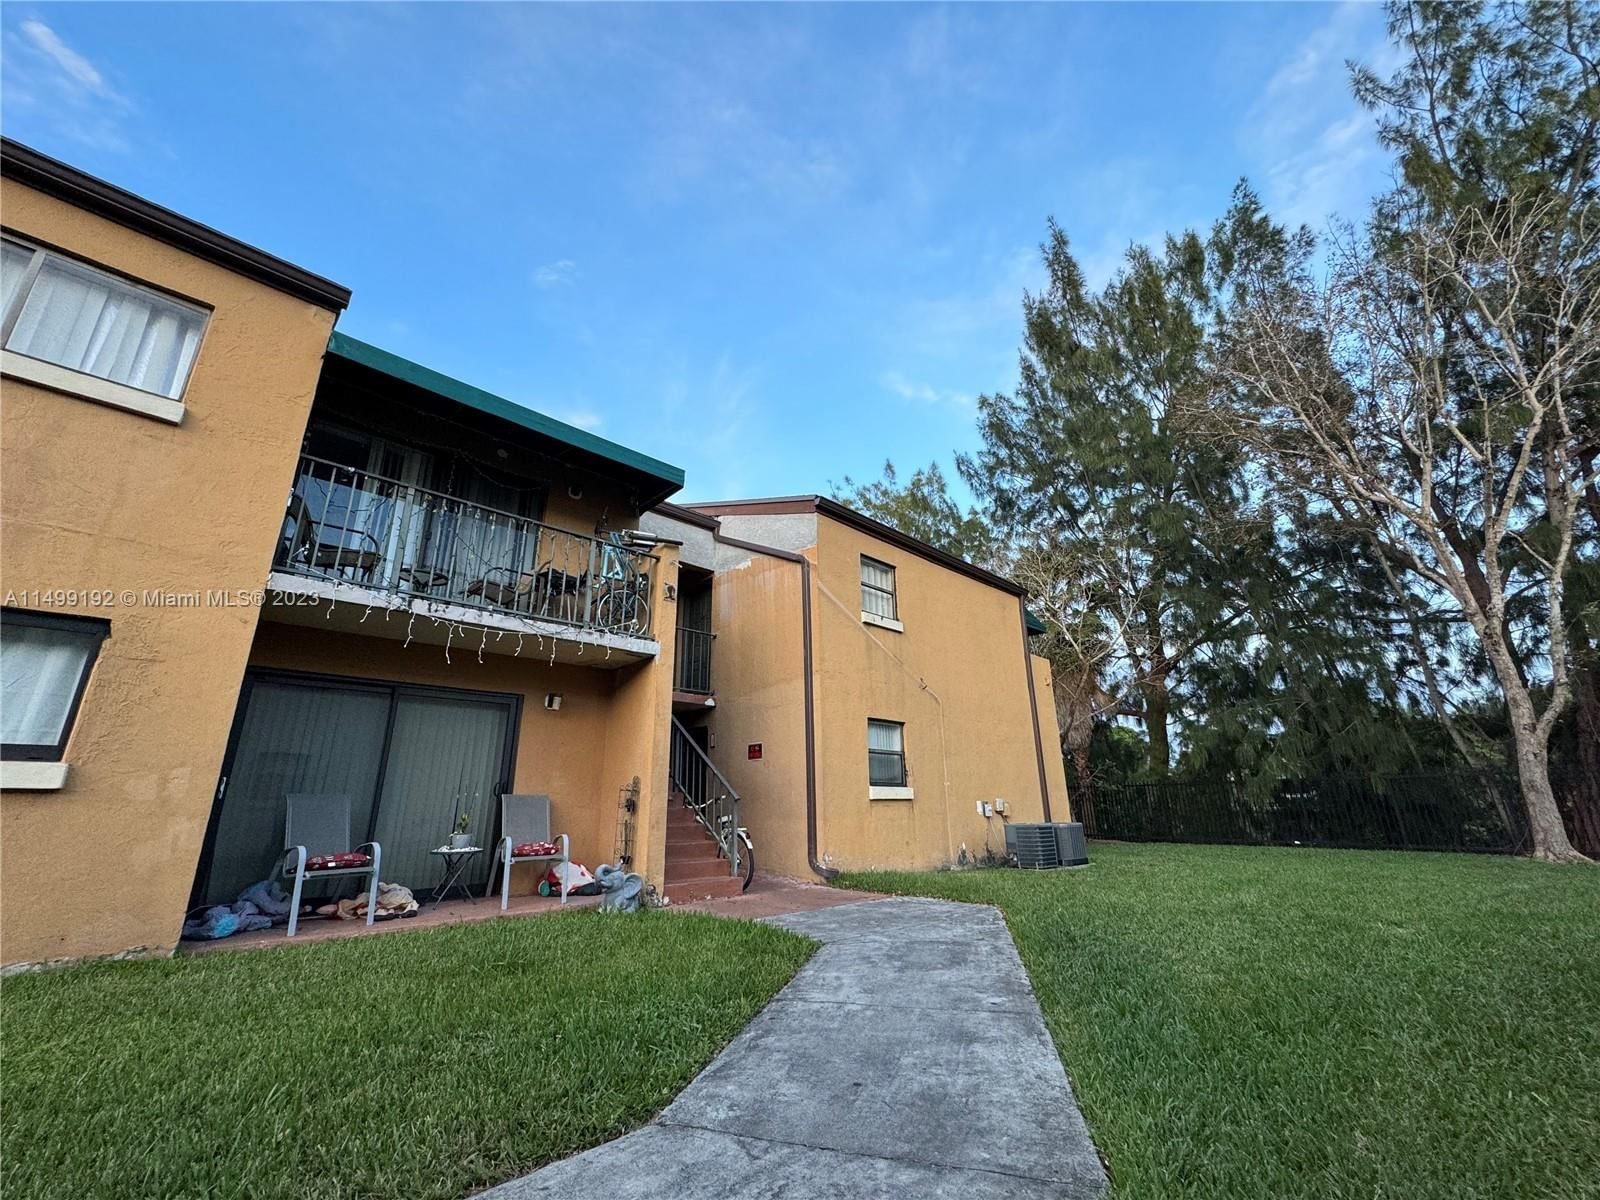 Real estate property located at 7411 152nd Ave #6-205, Miami-Dade County, MAGNOLIA LANE CONDO, Miami, FL